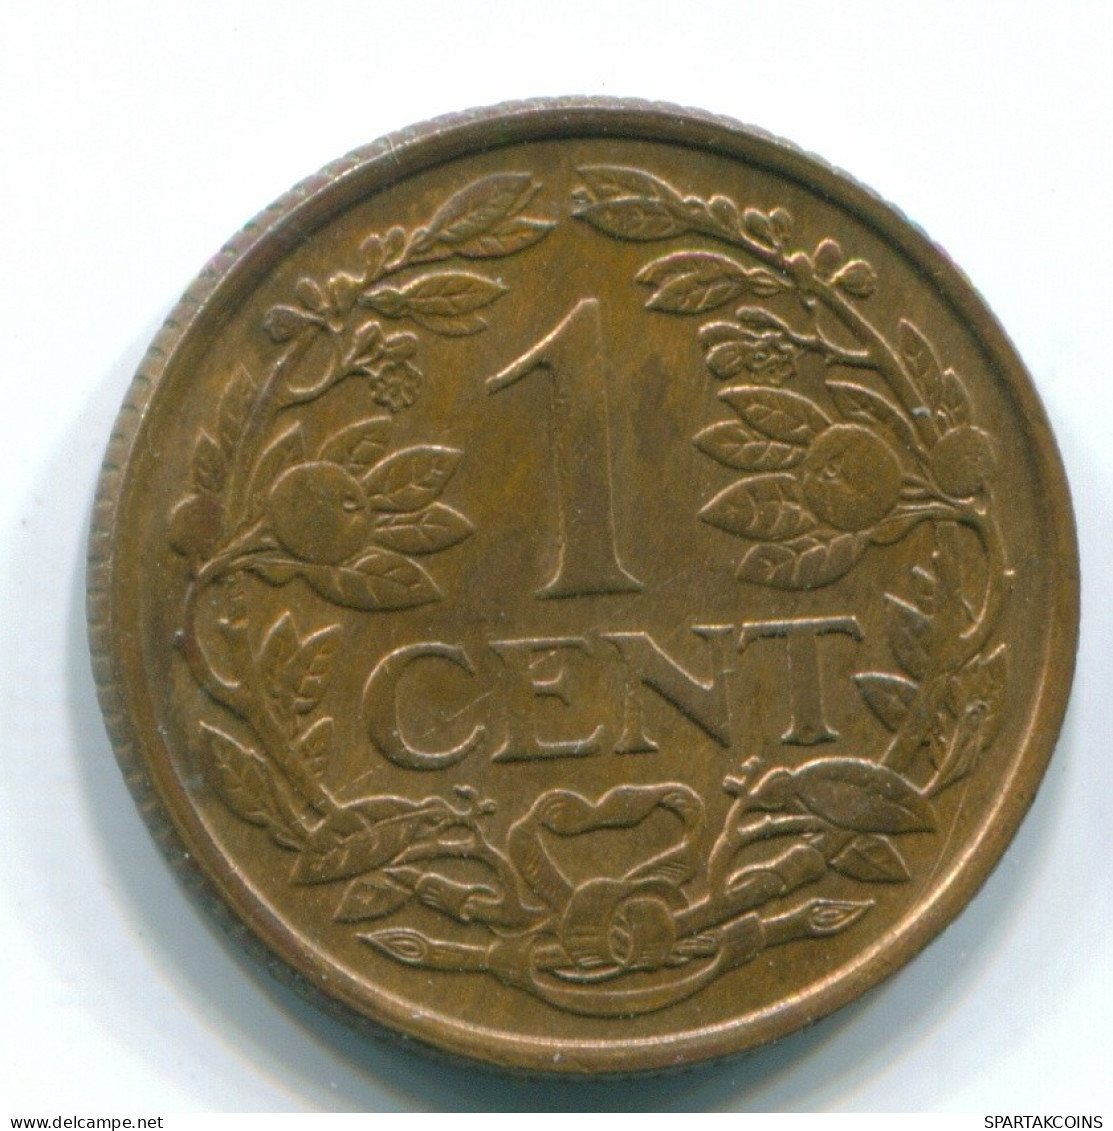 1 CENT 1967 NIEDERLÄNDISCHE ANTILLEN Bronze Fish Koloniale Münze #S11130.D.A - Niederländische Antillen